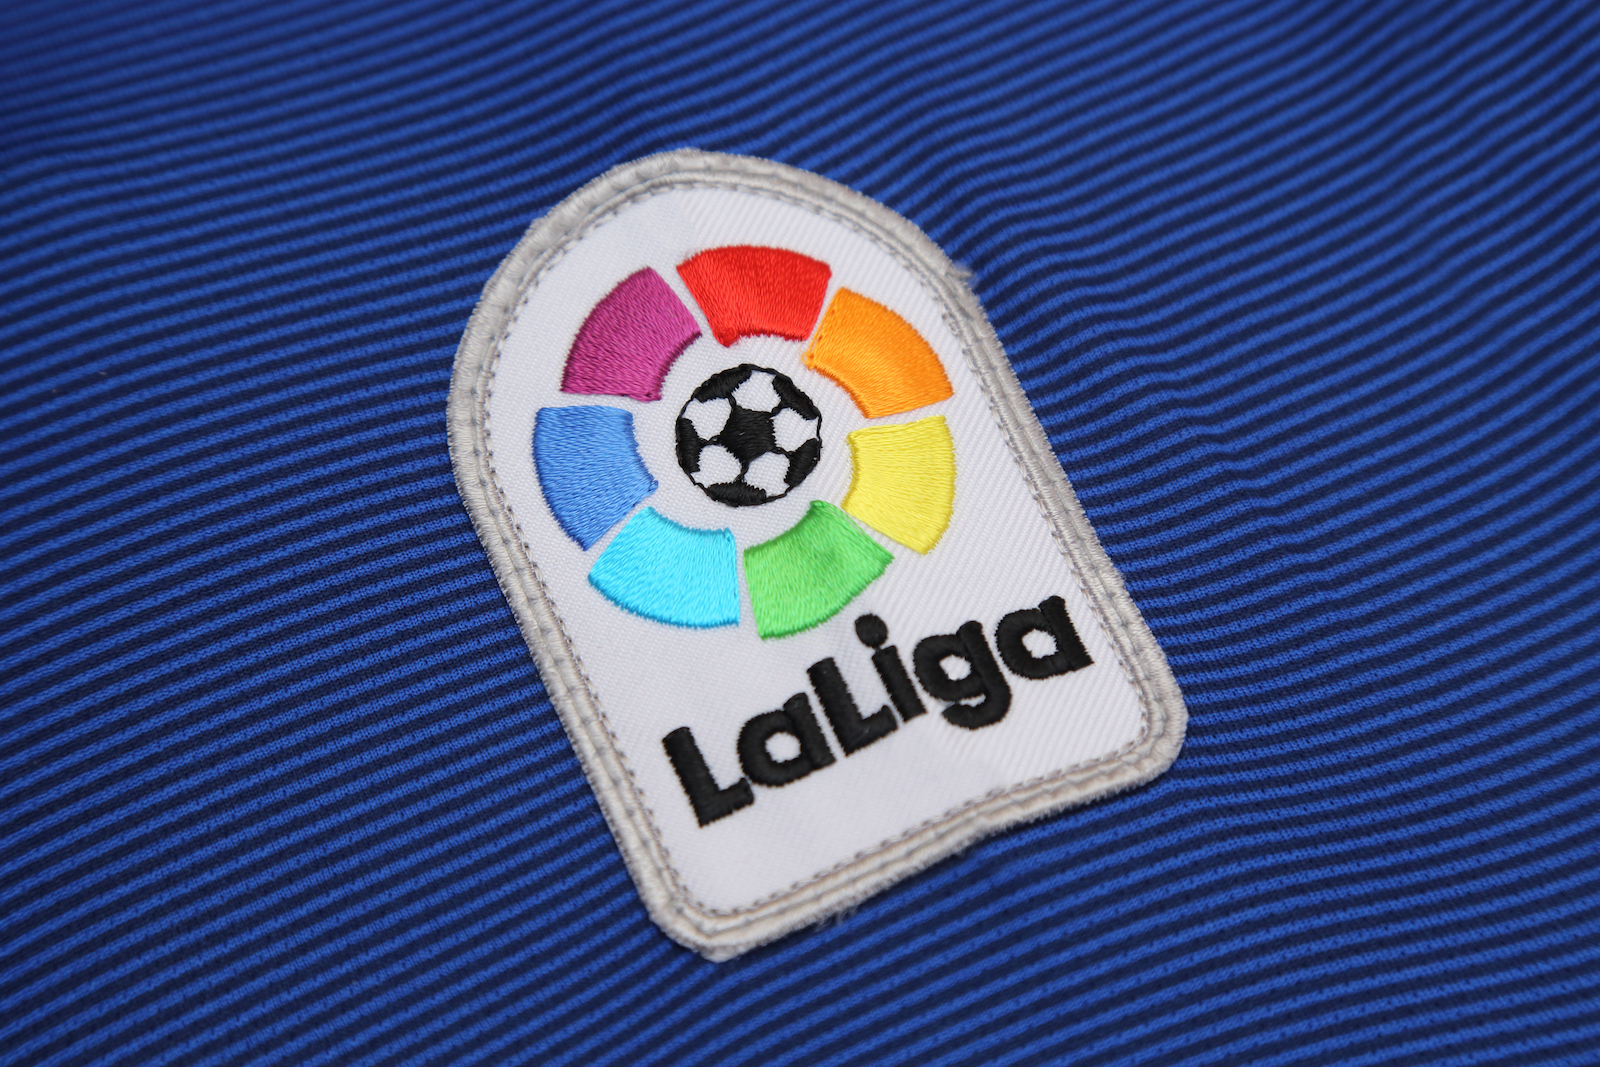 La Liga badge